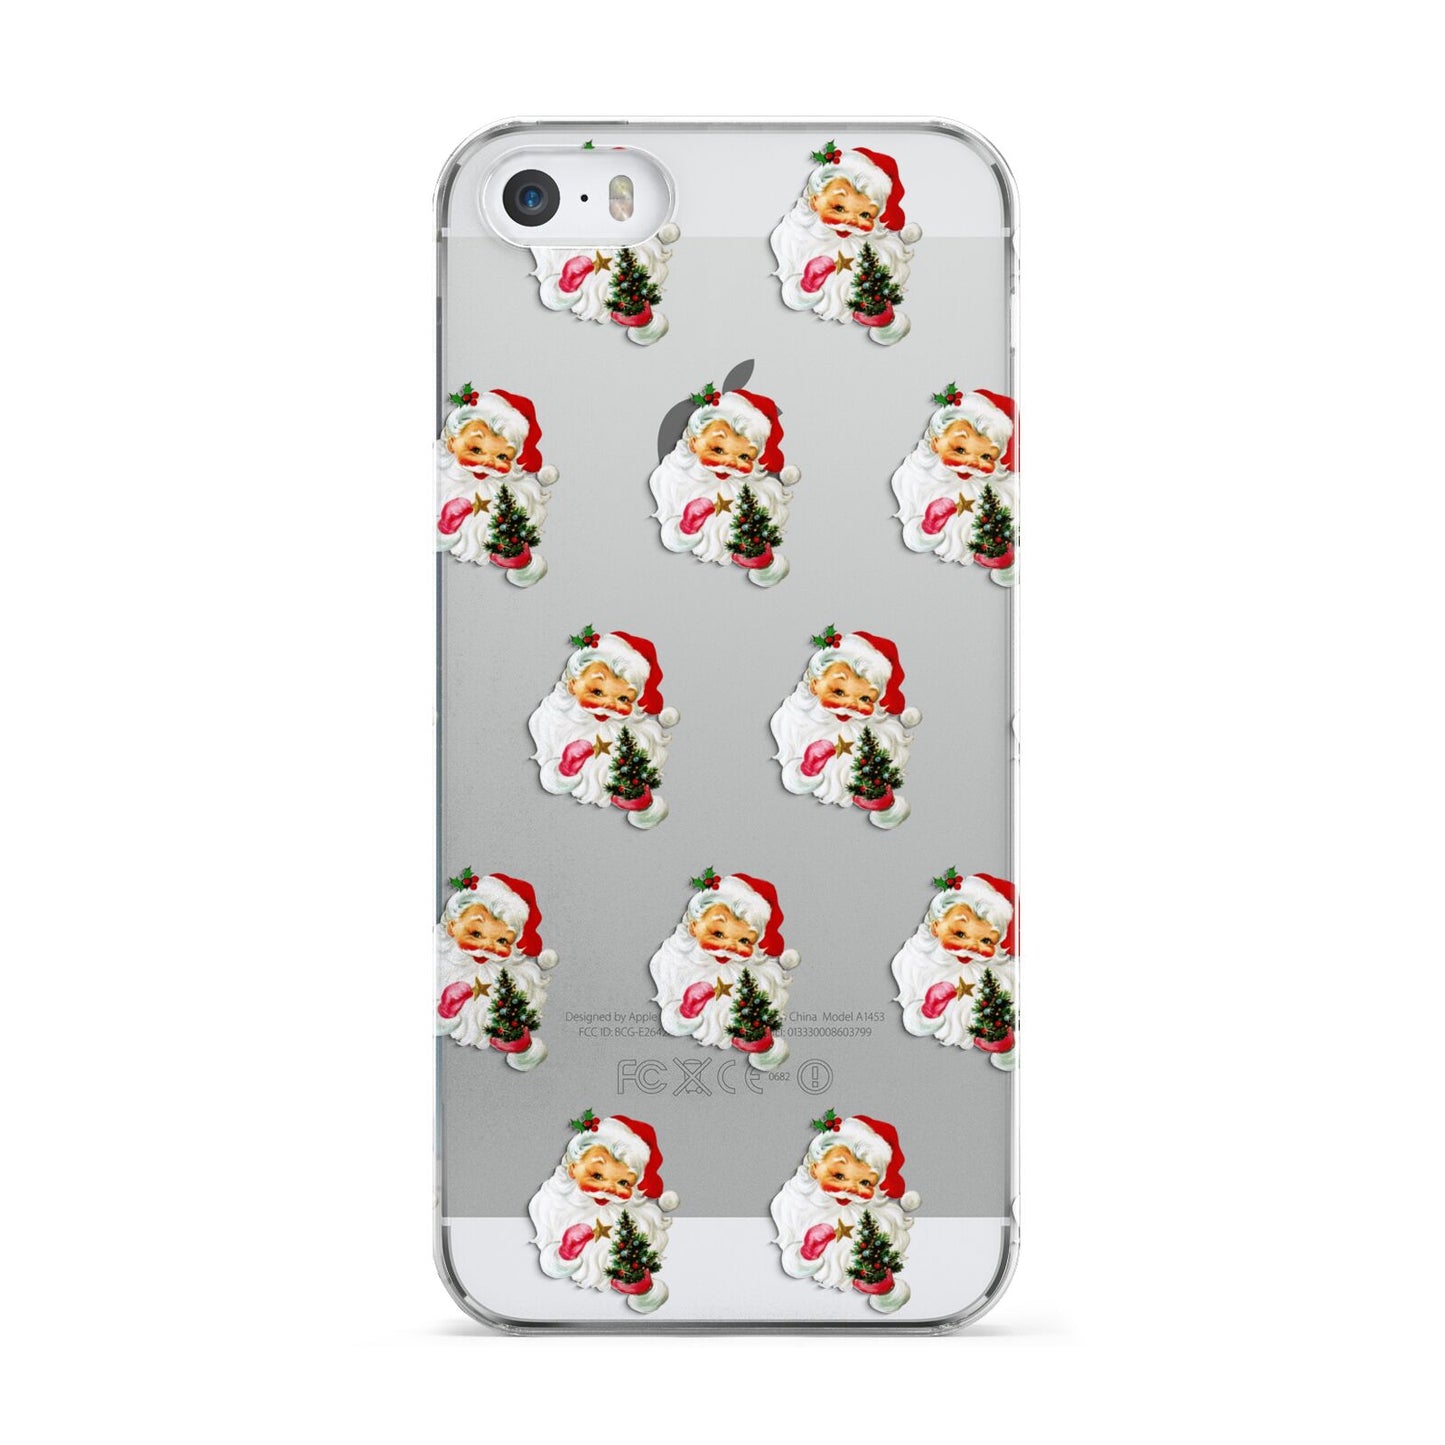 Retro Santa Face Apple iPhone 5 Case